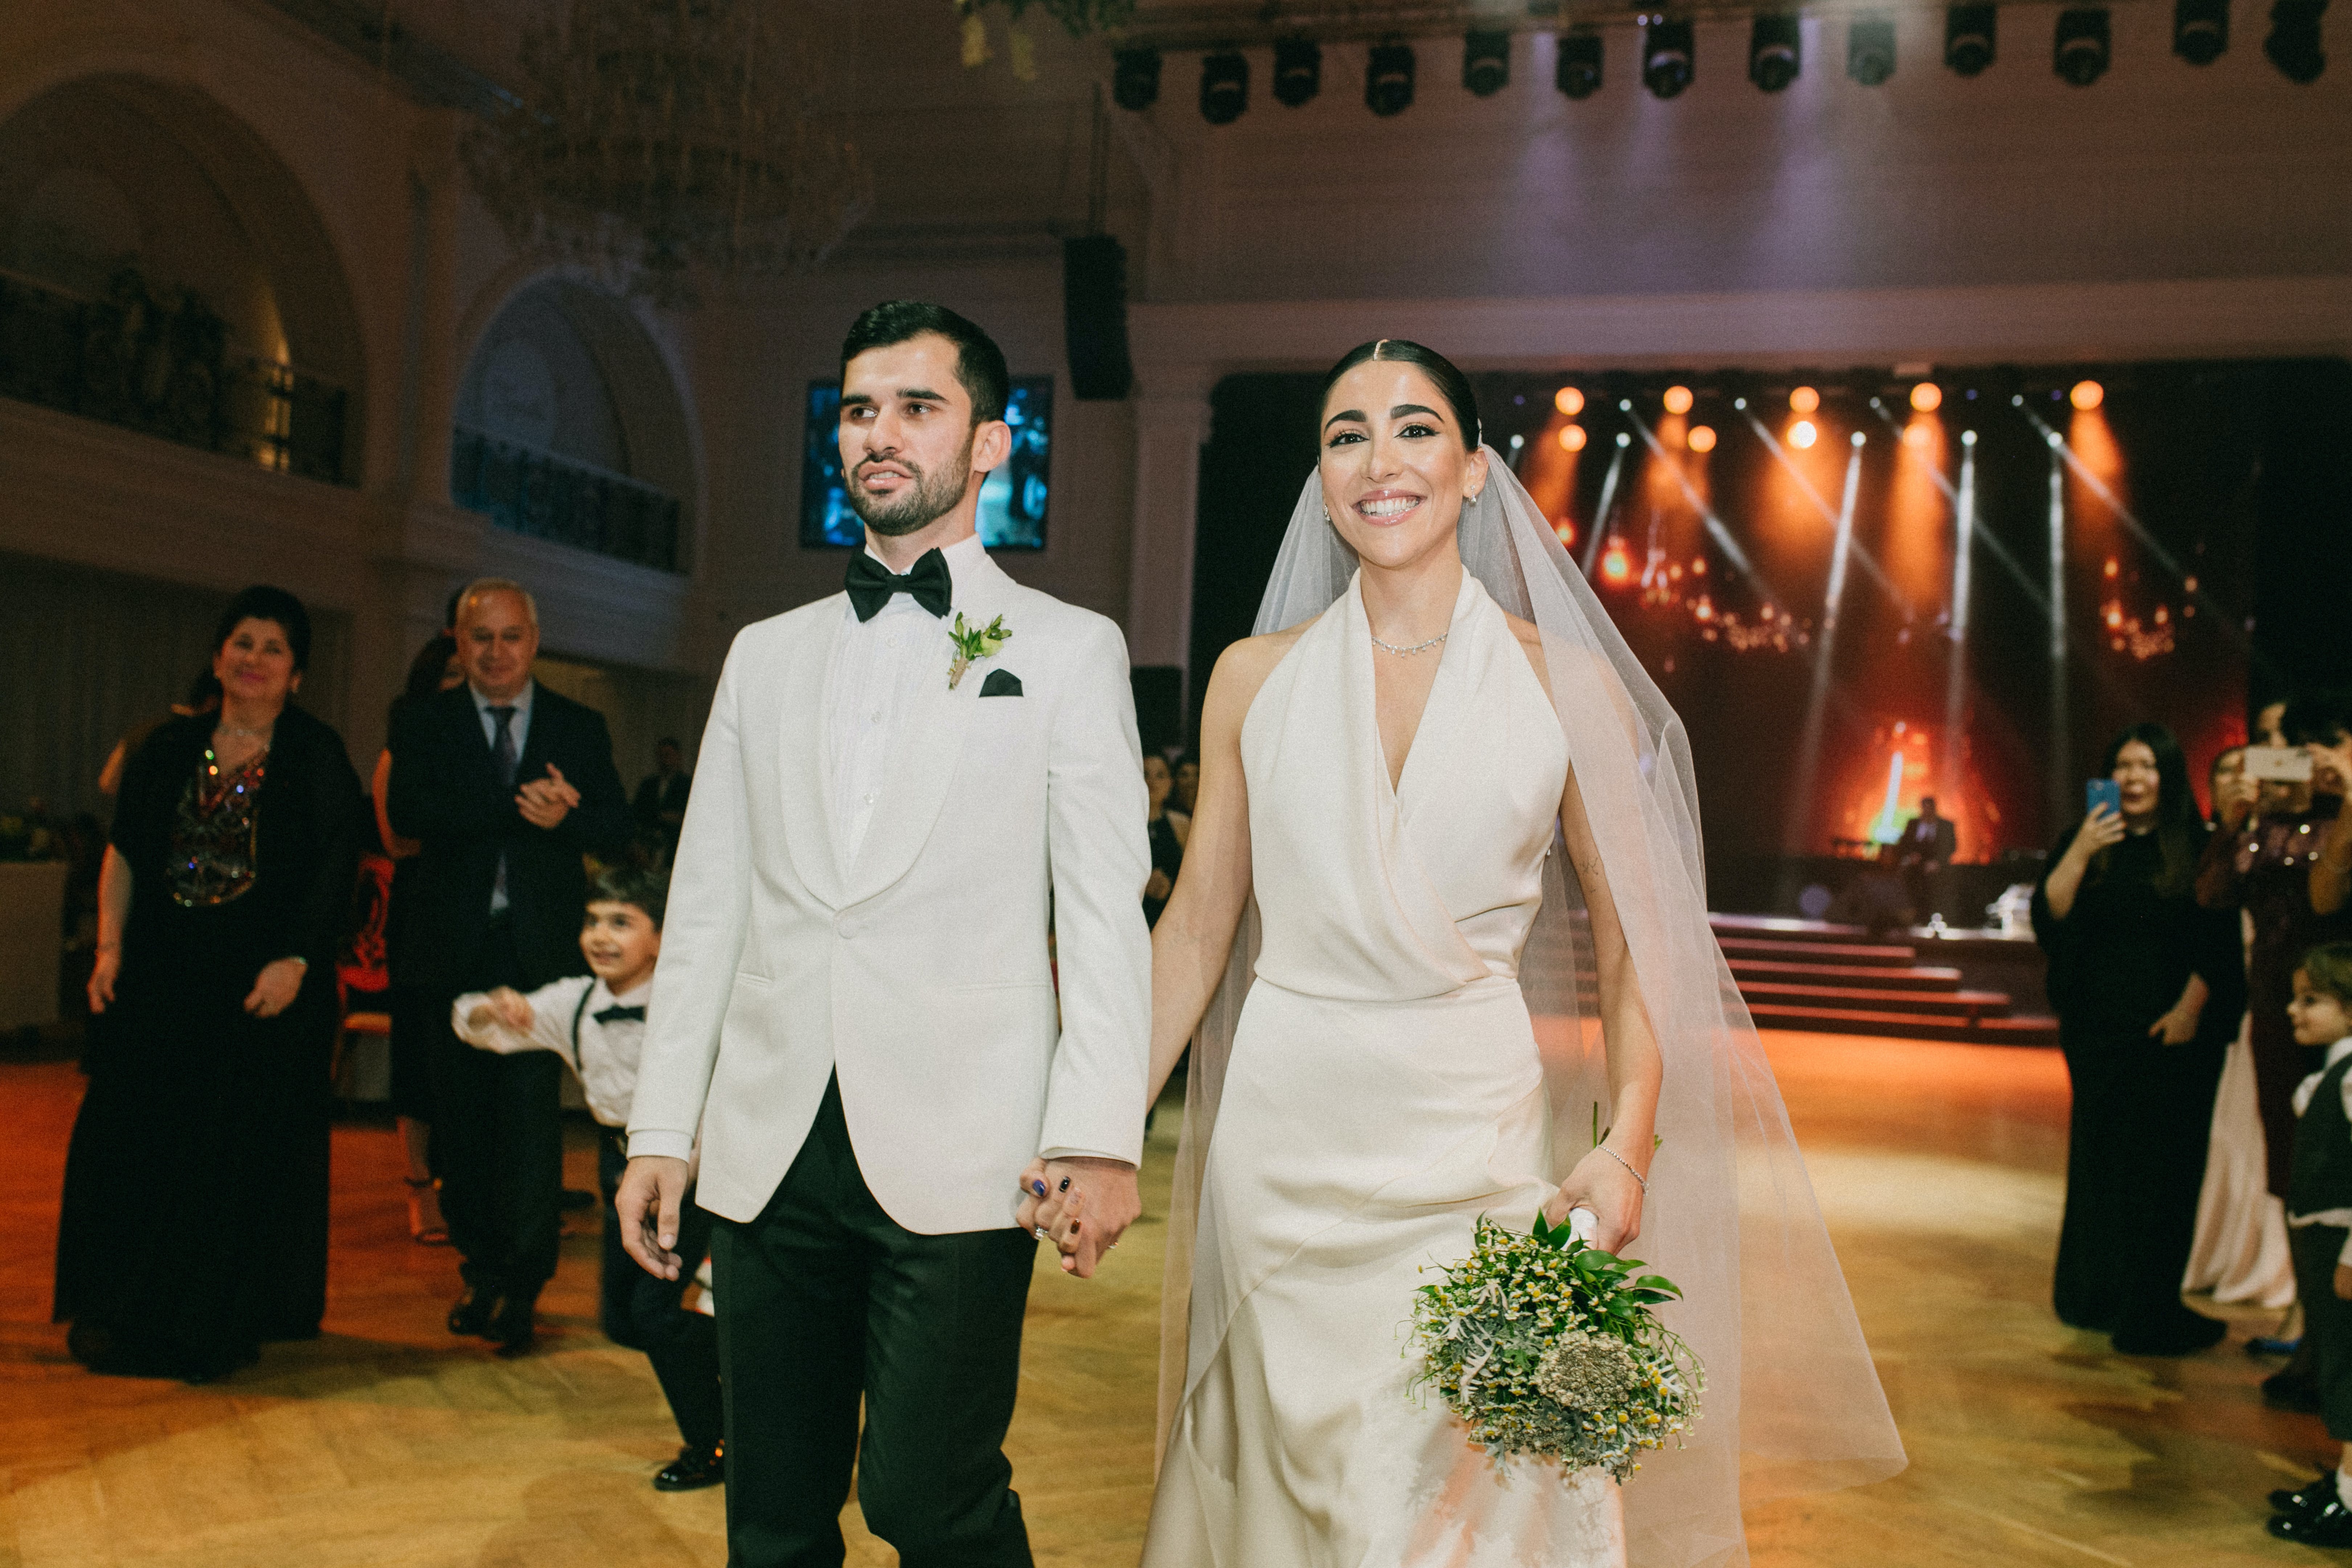 Le marié et la mariée marchant main dans la main sur le lieu du mariage | Source : Pexels